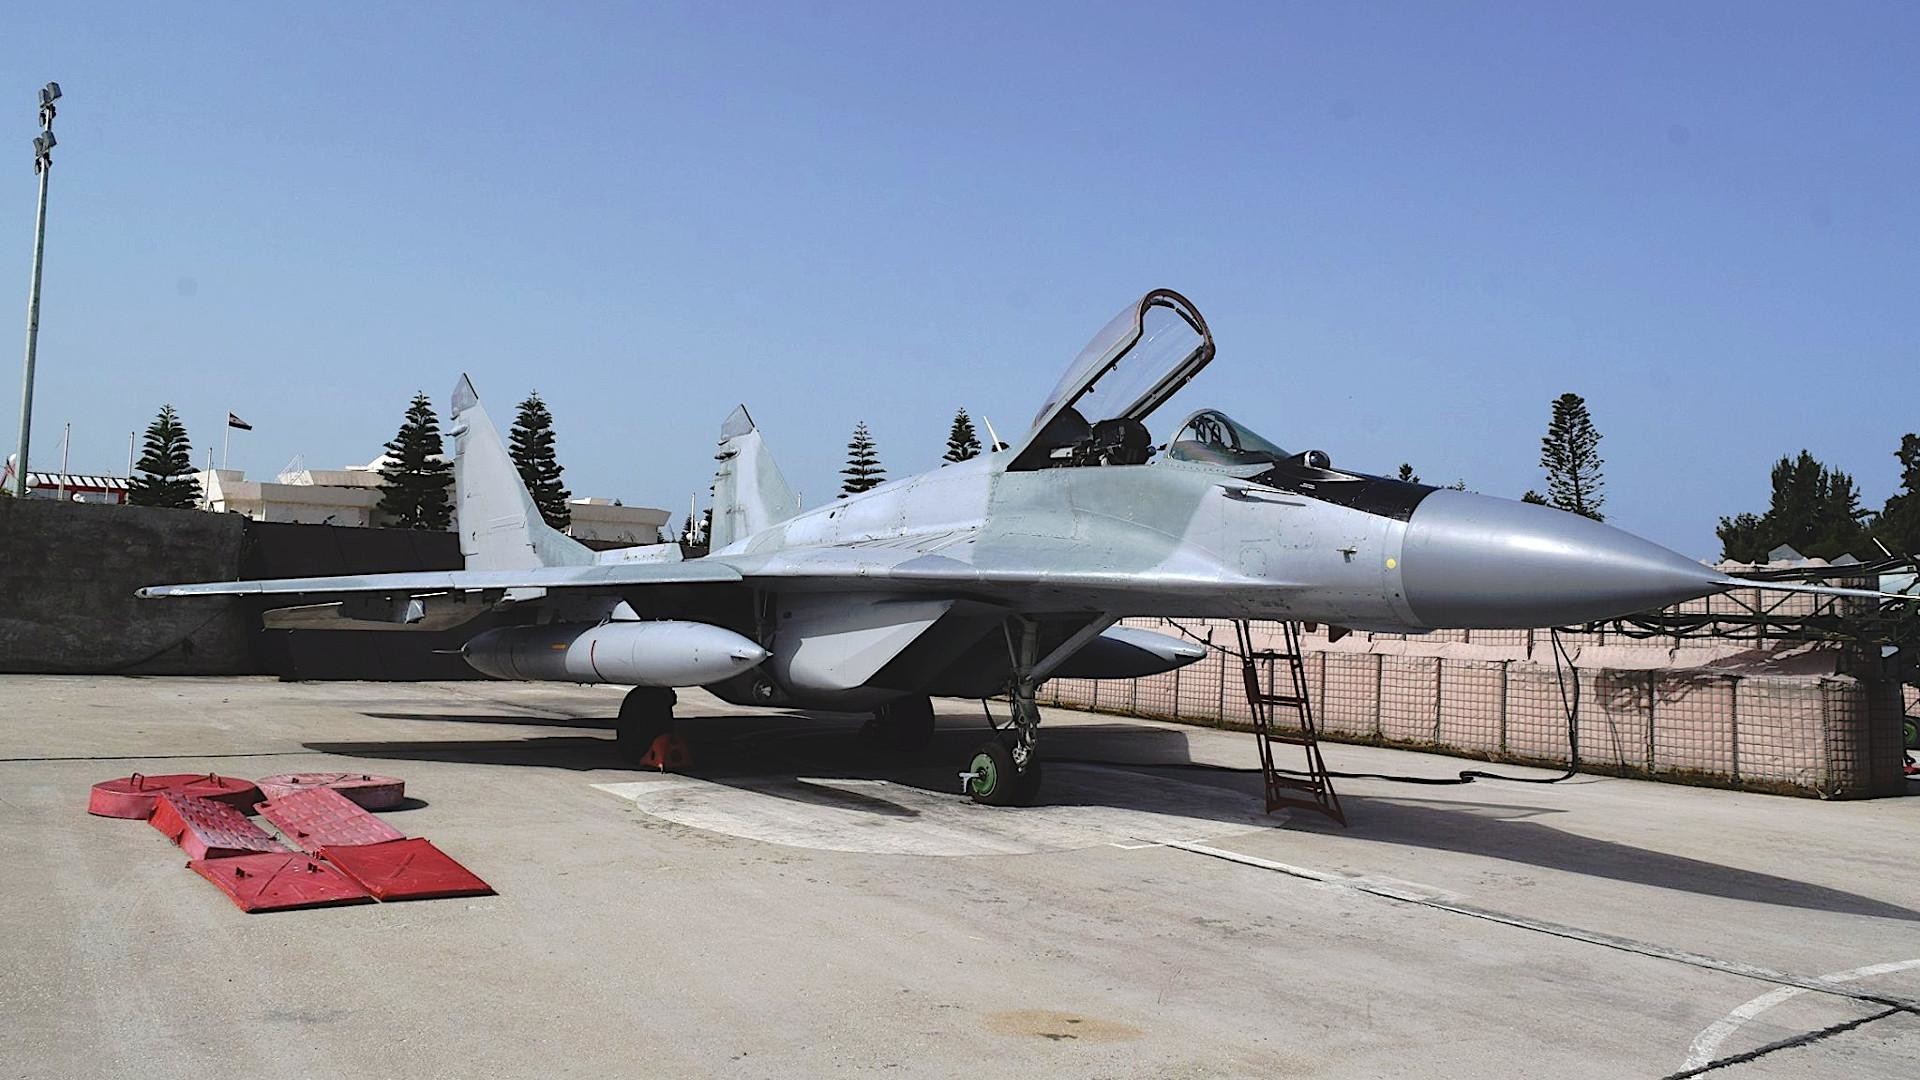 "Джипов с врагом пока не видно": в Ливии сбили Миг-29 с русскоговорящим летчиком